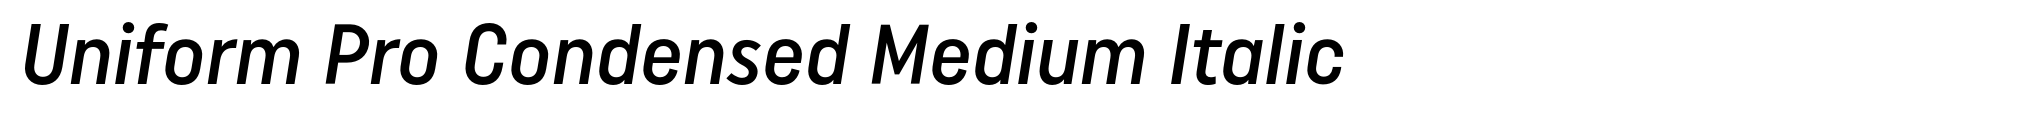 Uniform Pro Condensed Medium Italic image